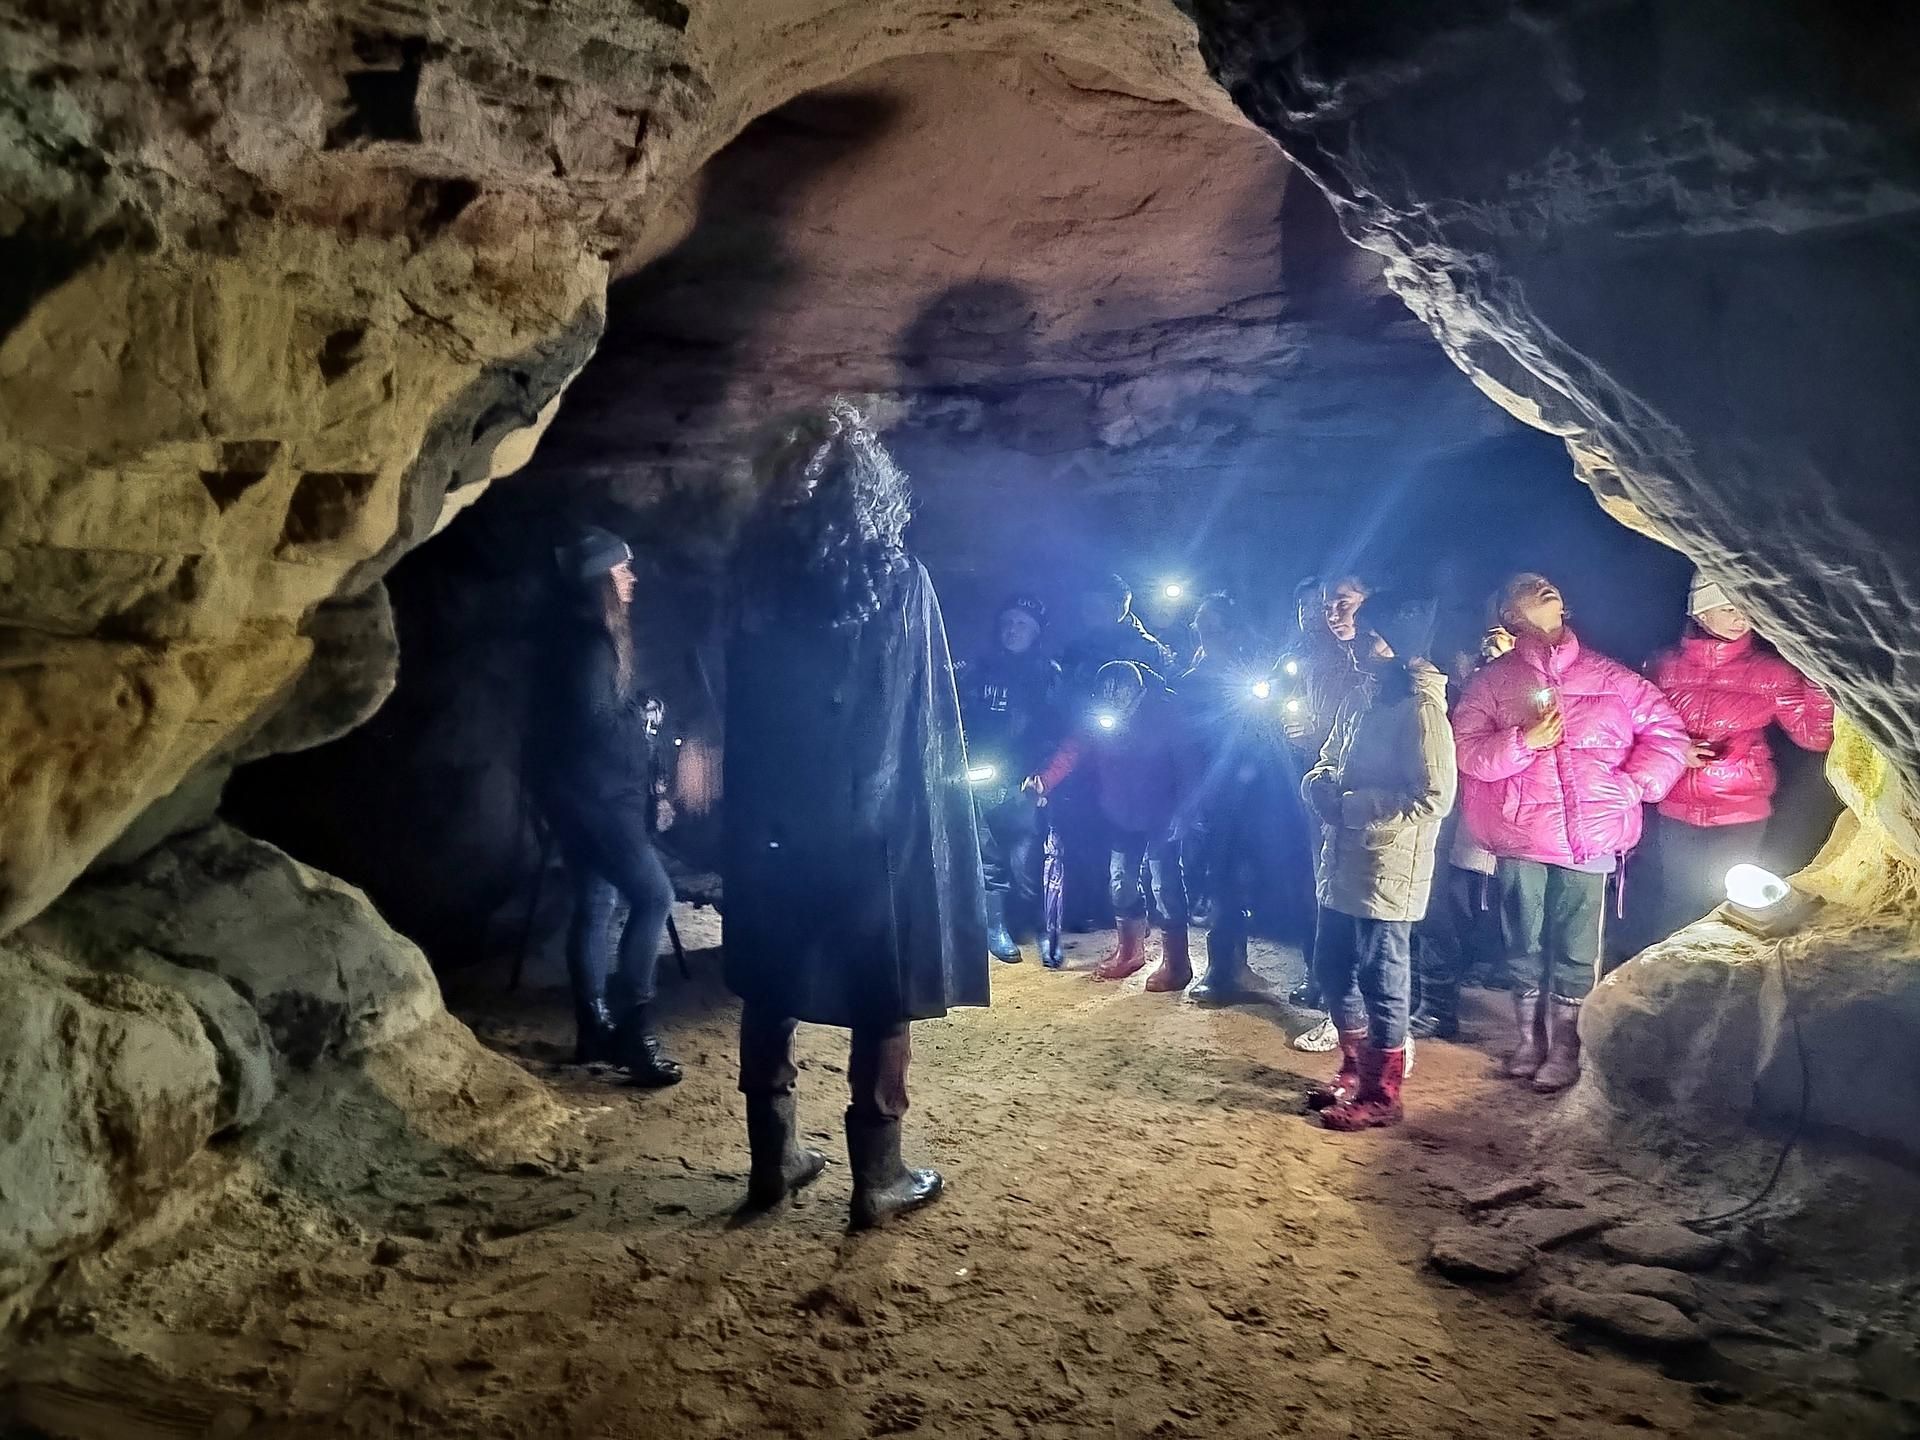 Саблинские пещеры